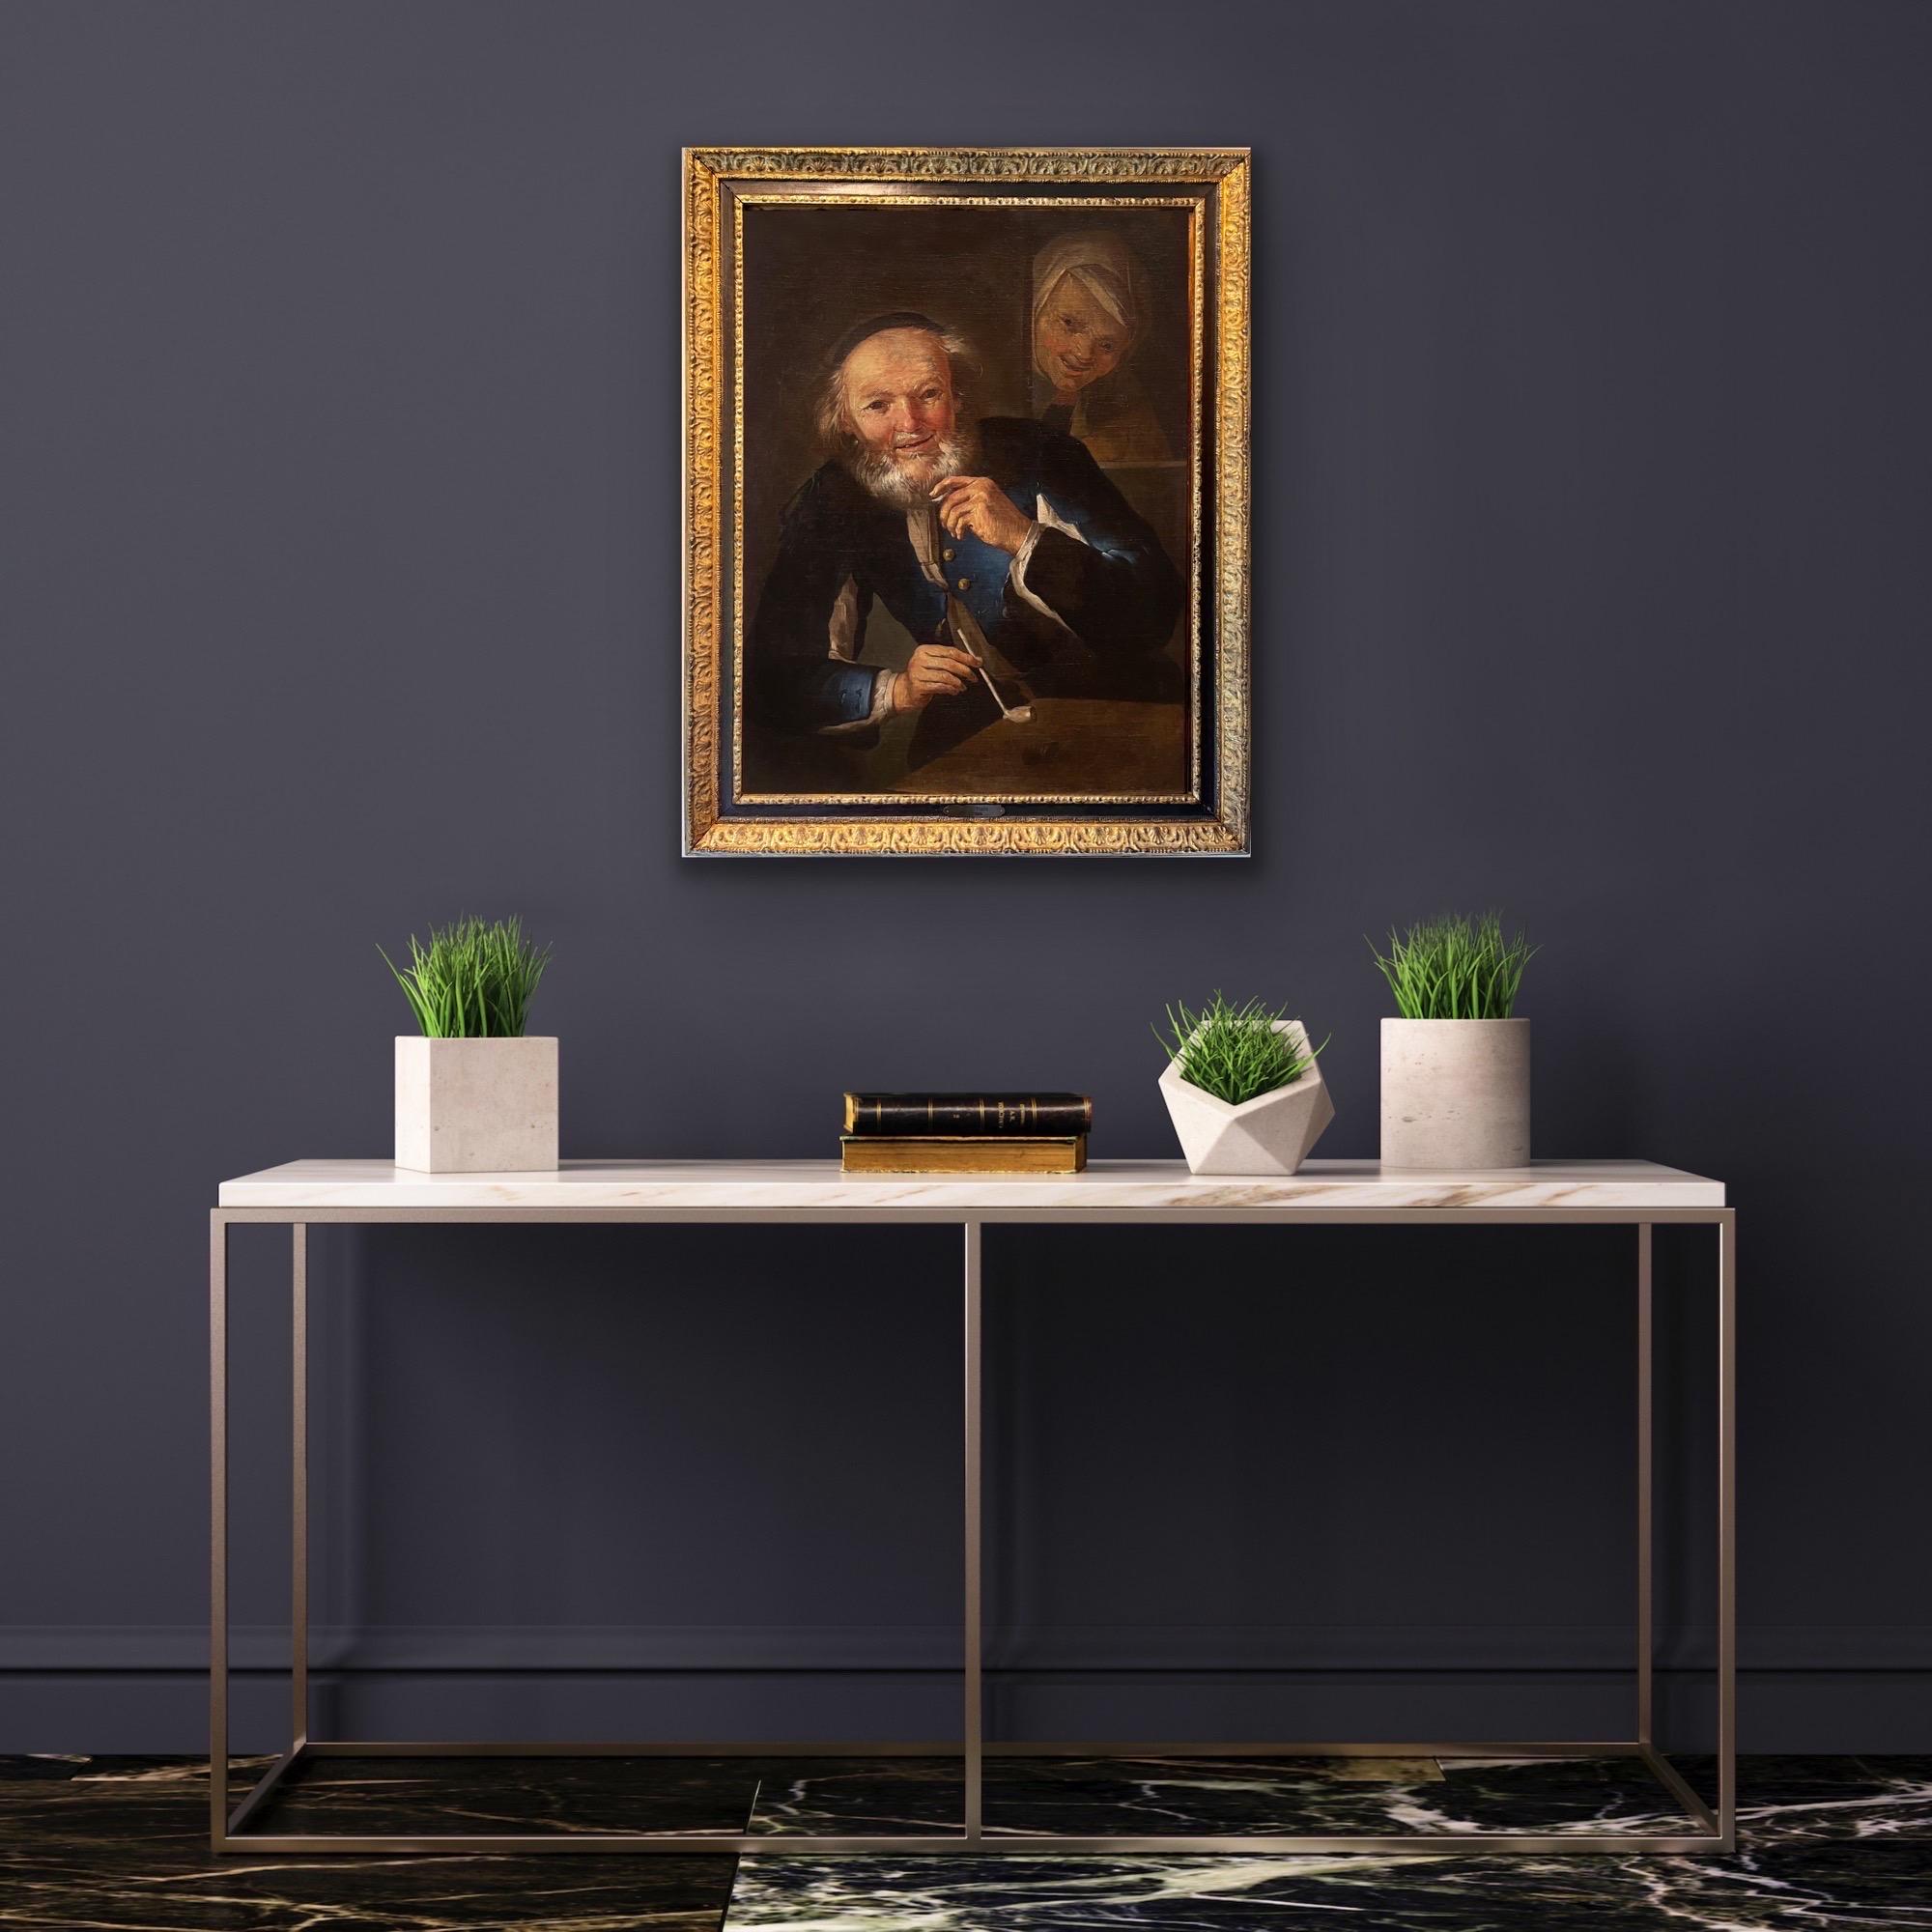 17. Jahrhundert Holländischer Alter Meister Öl - The Smoker - Genre Interieur  – Painting von Frans Hals (follower of)